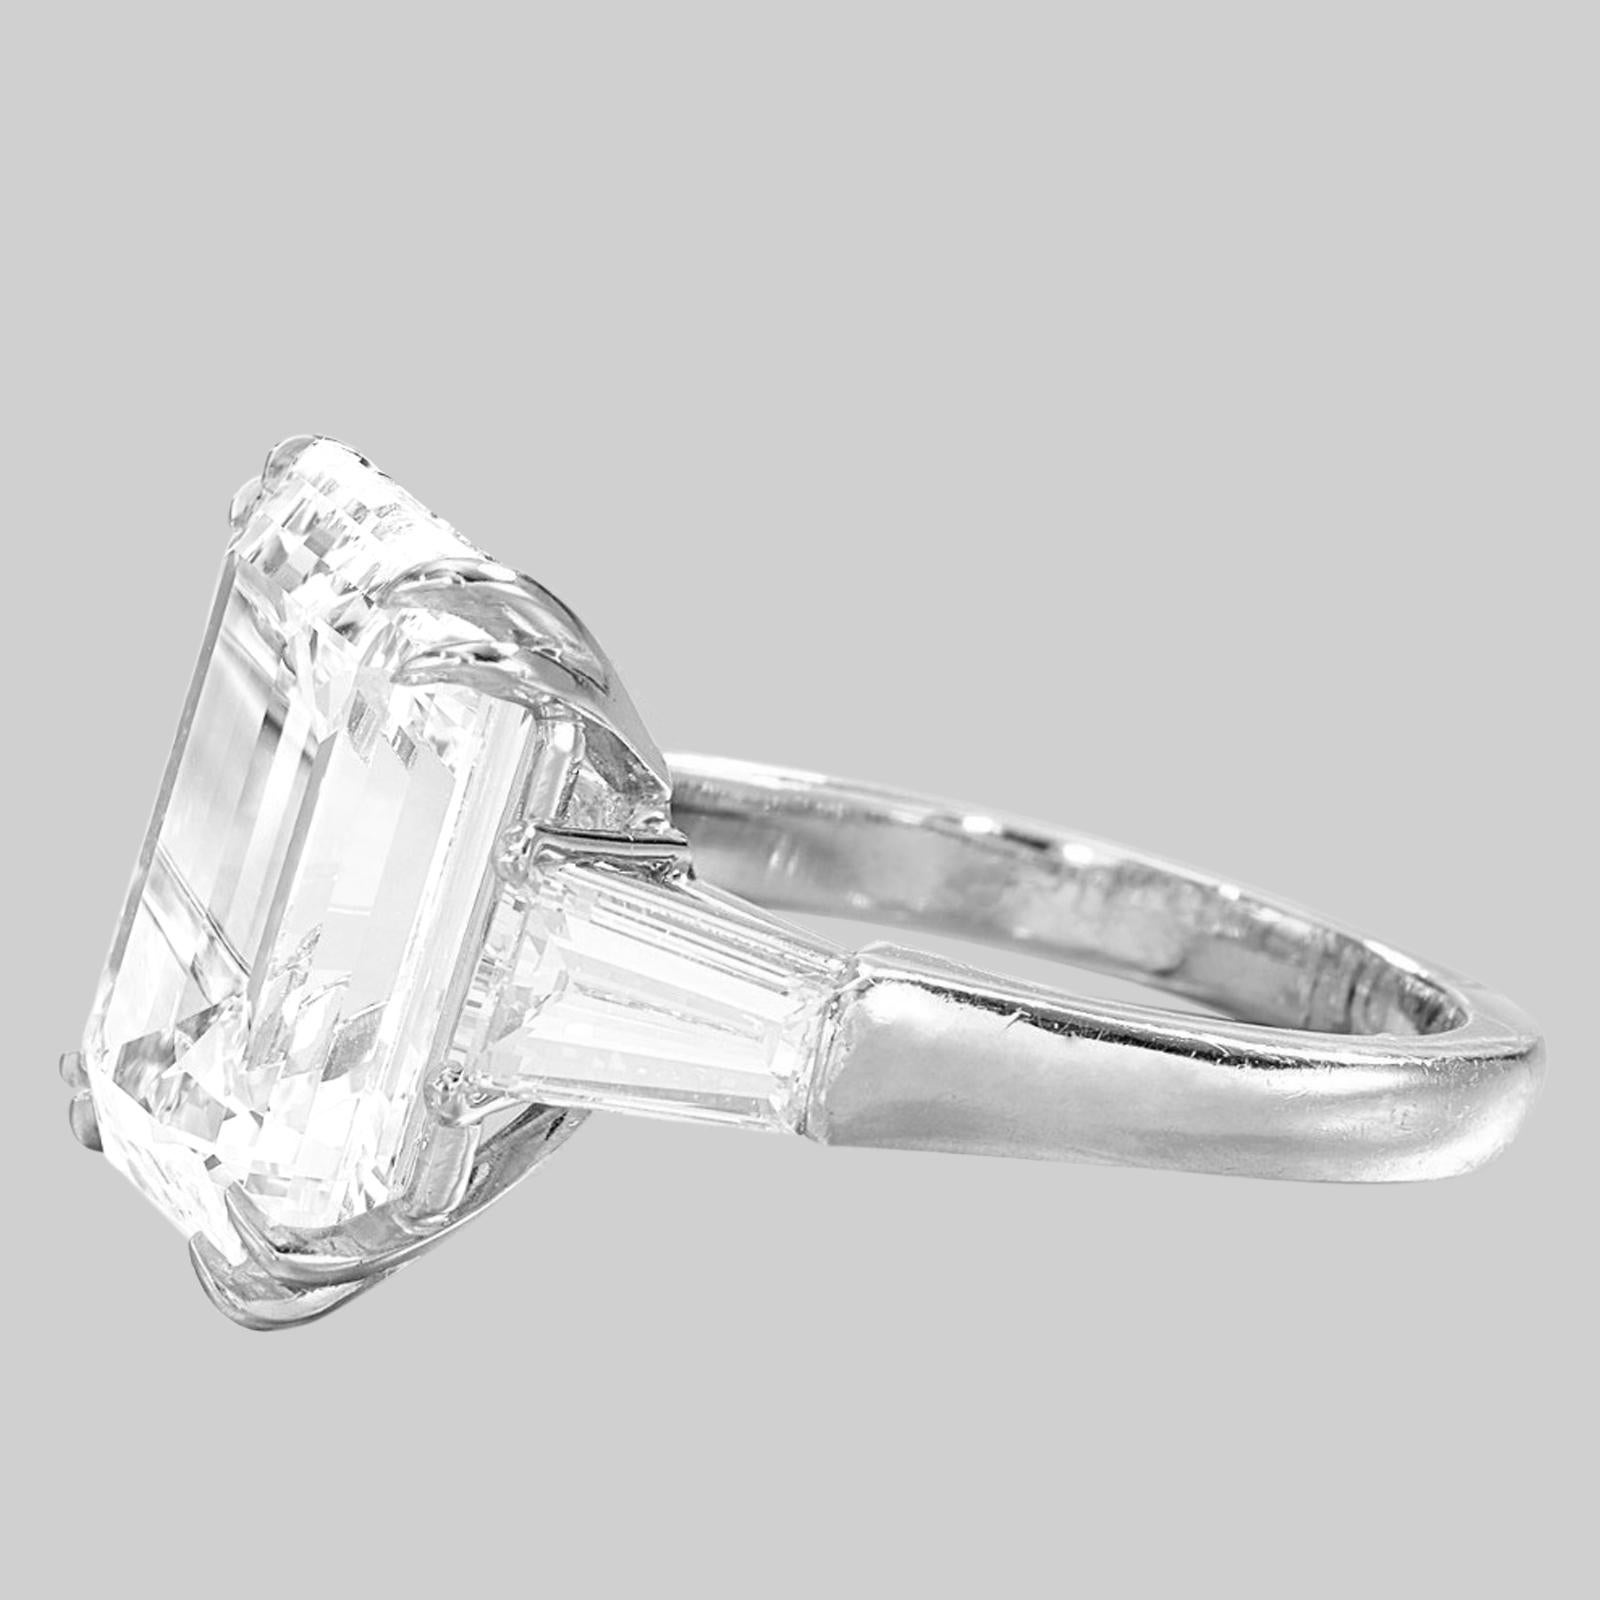 
Dieser exquisite Ring ist mit einem prächtigen 10-Karat-Diamanten im Smaragdschliff von makelloser Reinheit und Farbe geschmückt. Die Diamanten auf der sorgfältig gefertigten Fassung wiegen insgesamt etwa 1 Karat. Der Diamant in der Mitte ist von